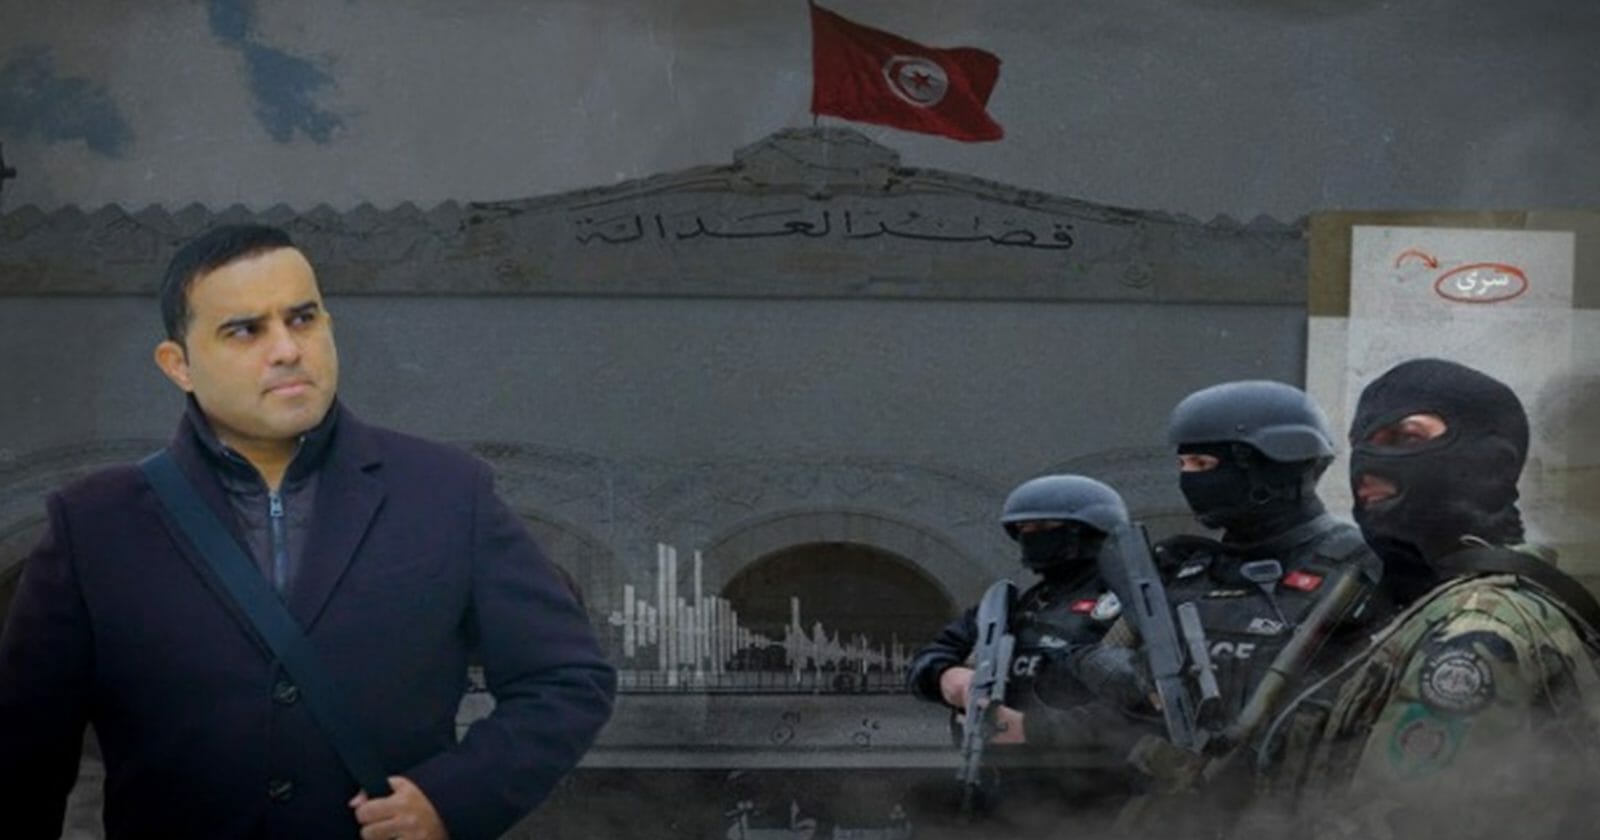 ما خفي أعظم تسريبات خطيرة تكشف تورط ضباط أمنيين في ملفي التسفير والإرهاب في تونس! watanserb.com